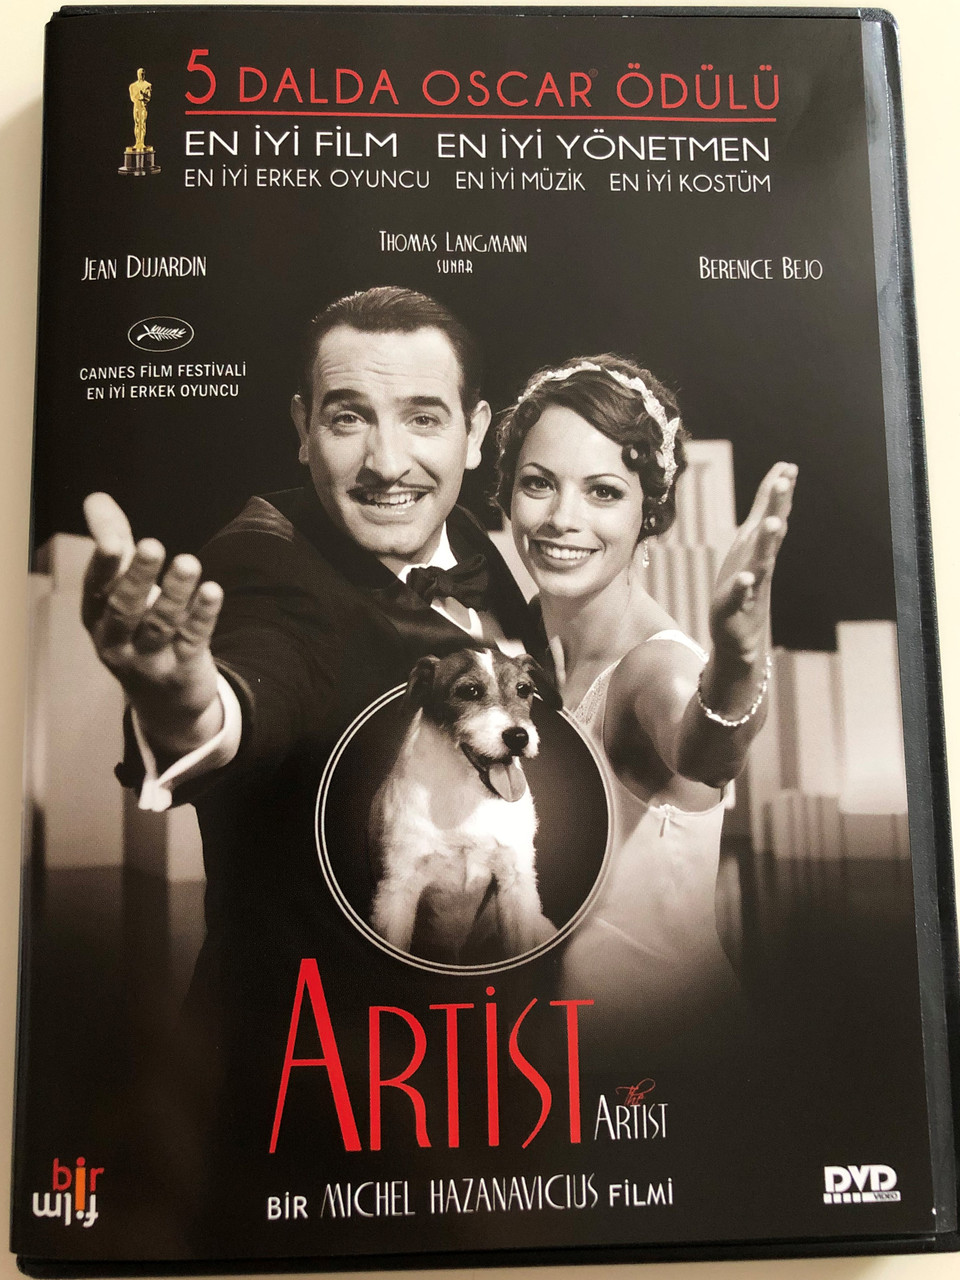 The Artist DVD 2011 Artist / Directed by Michel Hazanavicius / Starring:  Jean Dujardin, Thomas Langmann, Berenice Bejo / 5 dalda oscar ödülü / 5  Oscar Awards - bibleinmylanguage